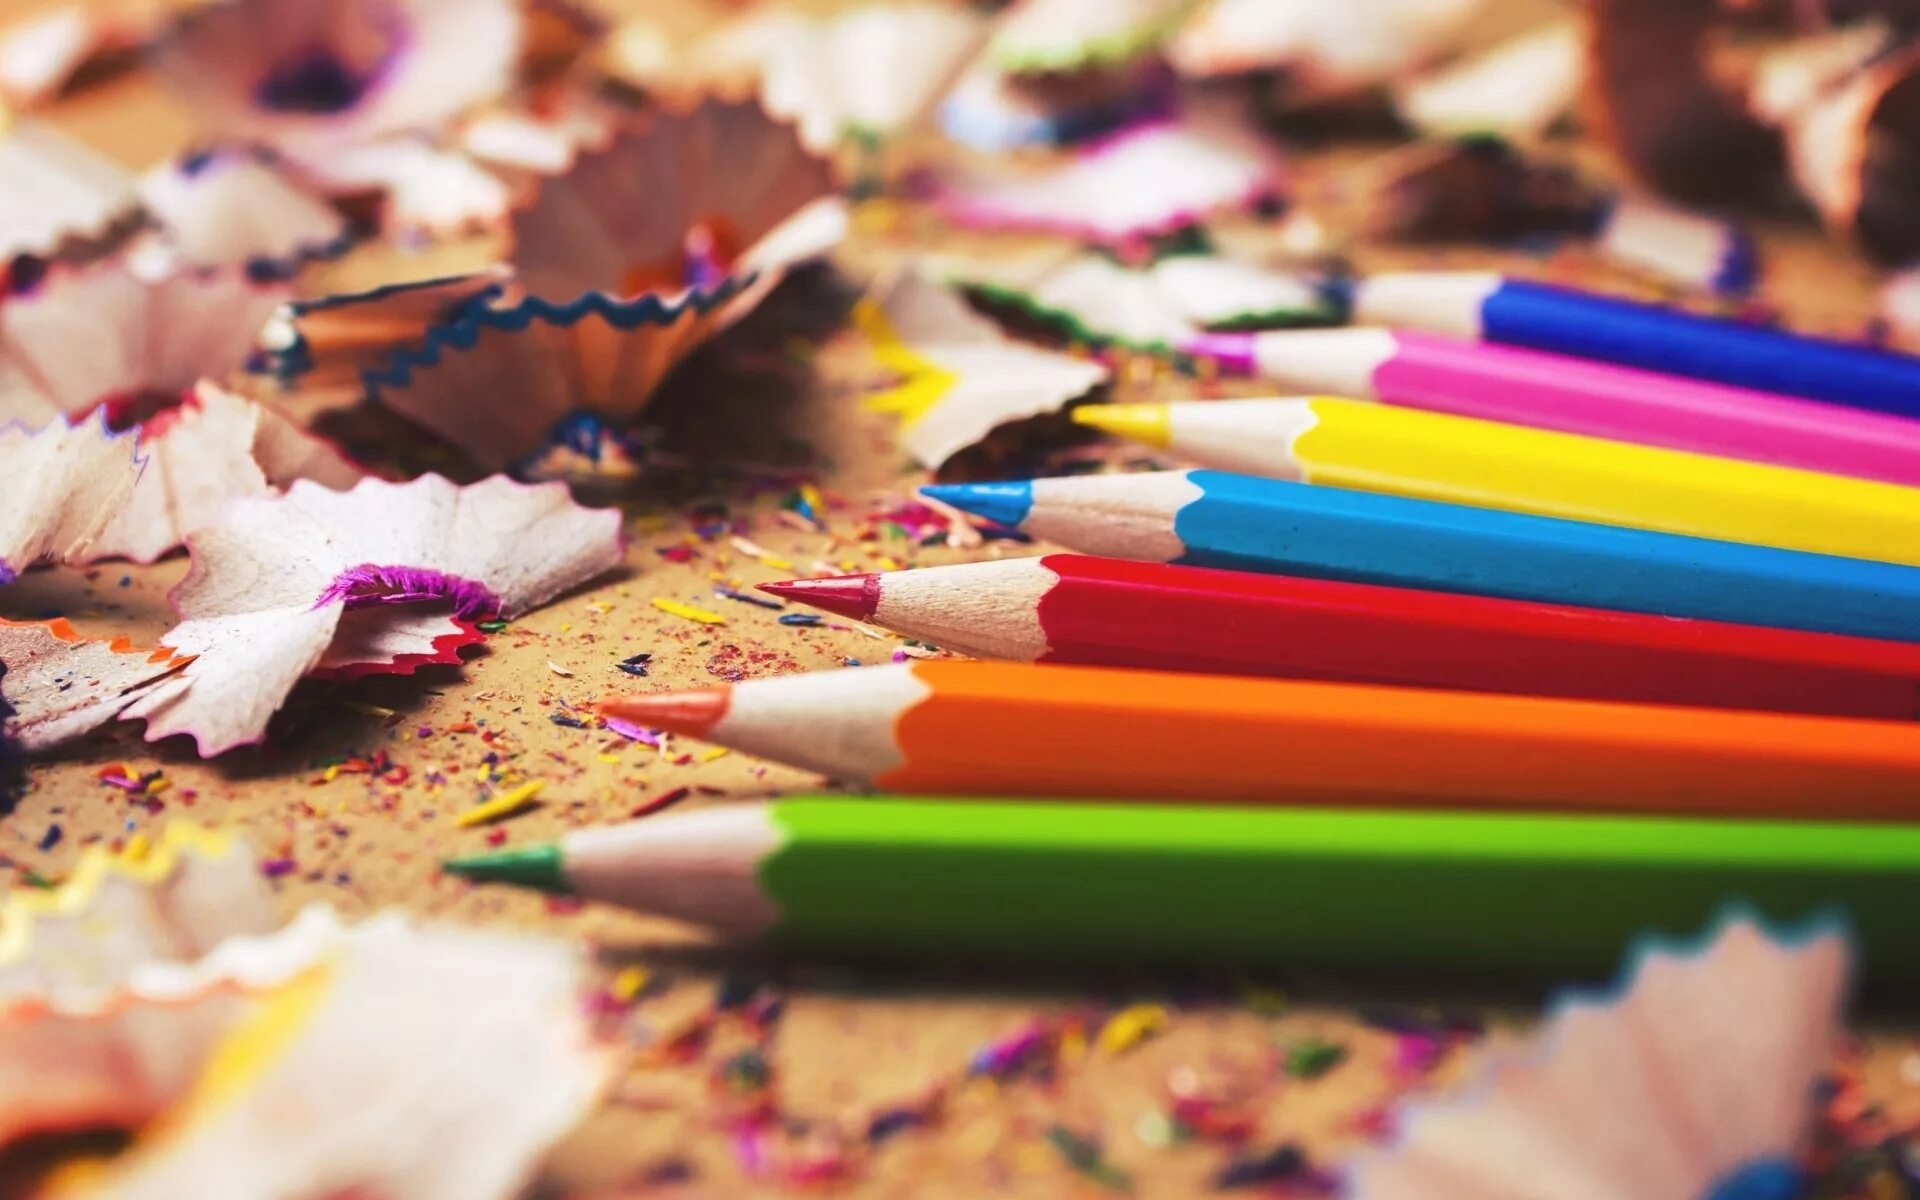 Цветные карандаши на столе. Разбросанные цветные карандаши. Интересные карандаши. Раскиданные карандаши на столе.